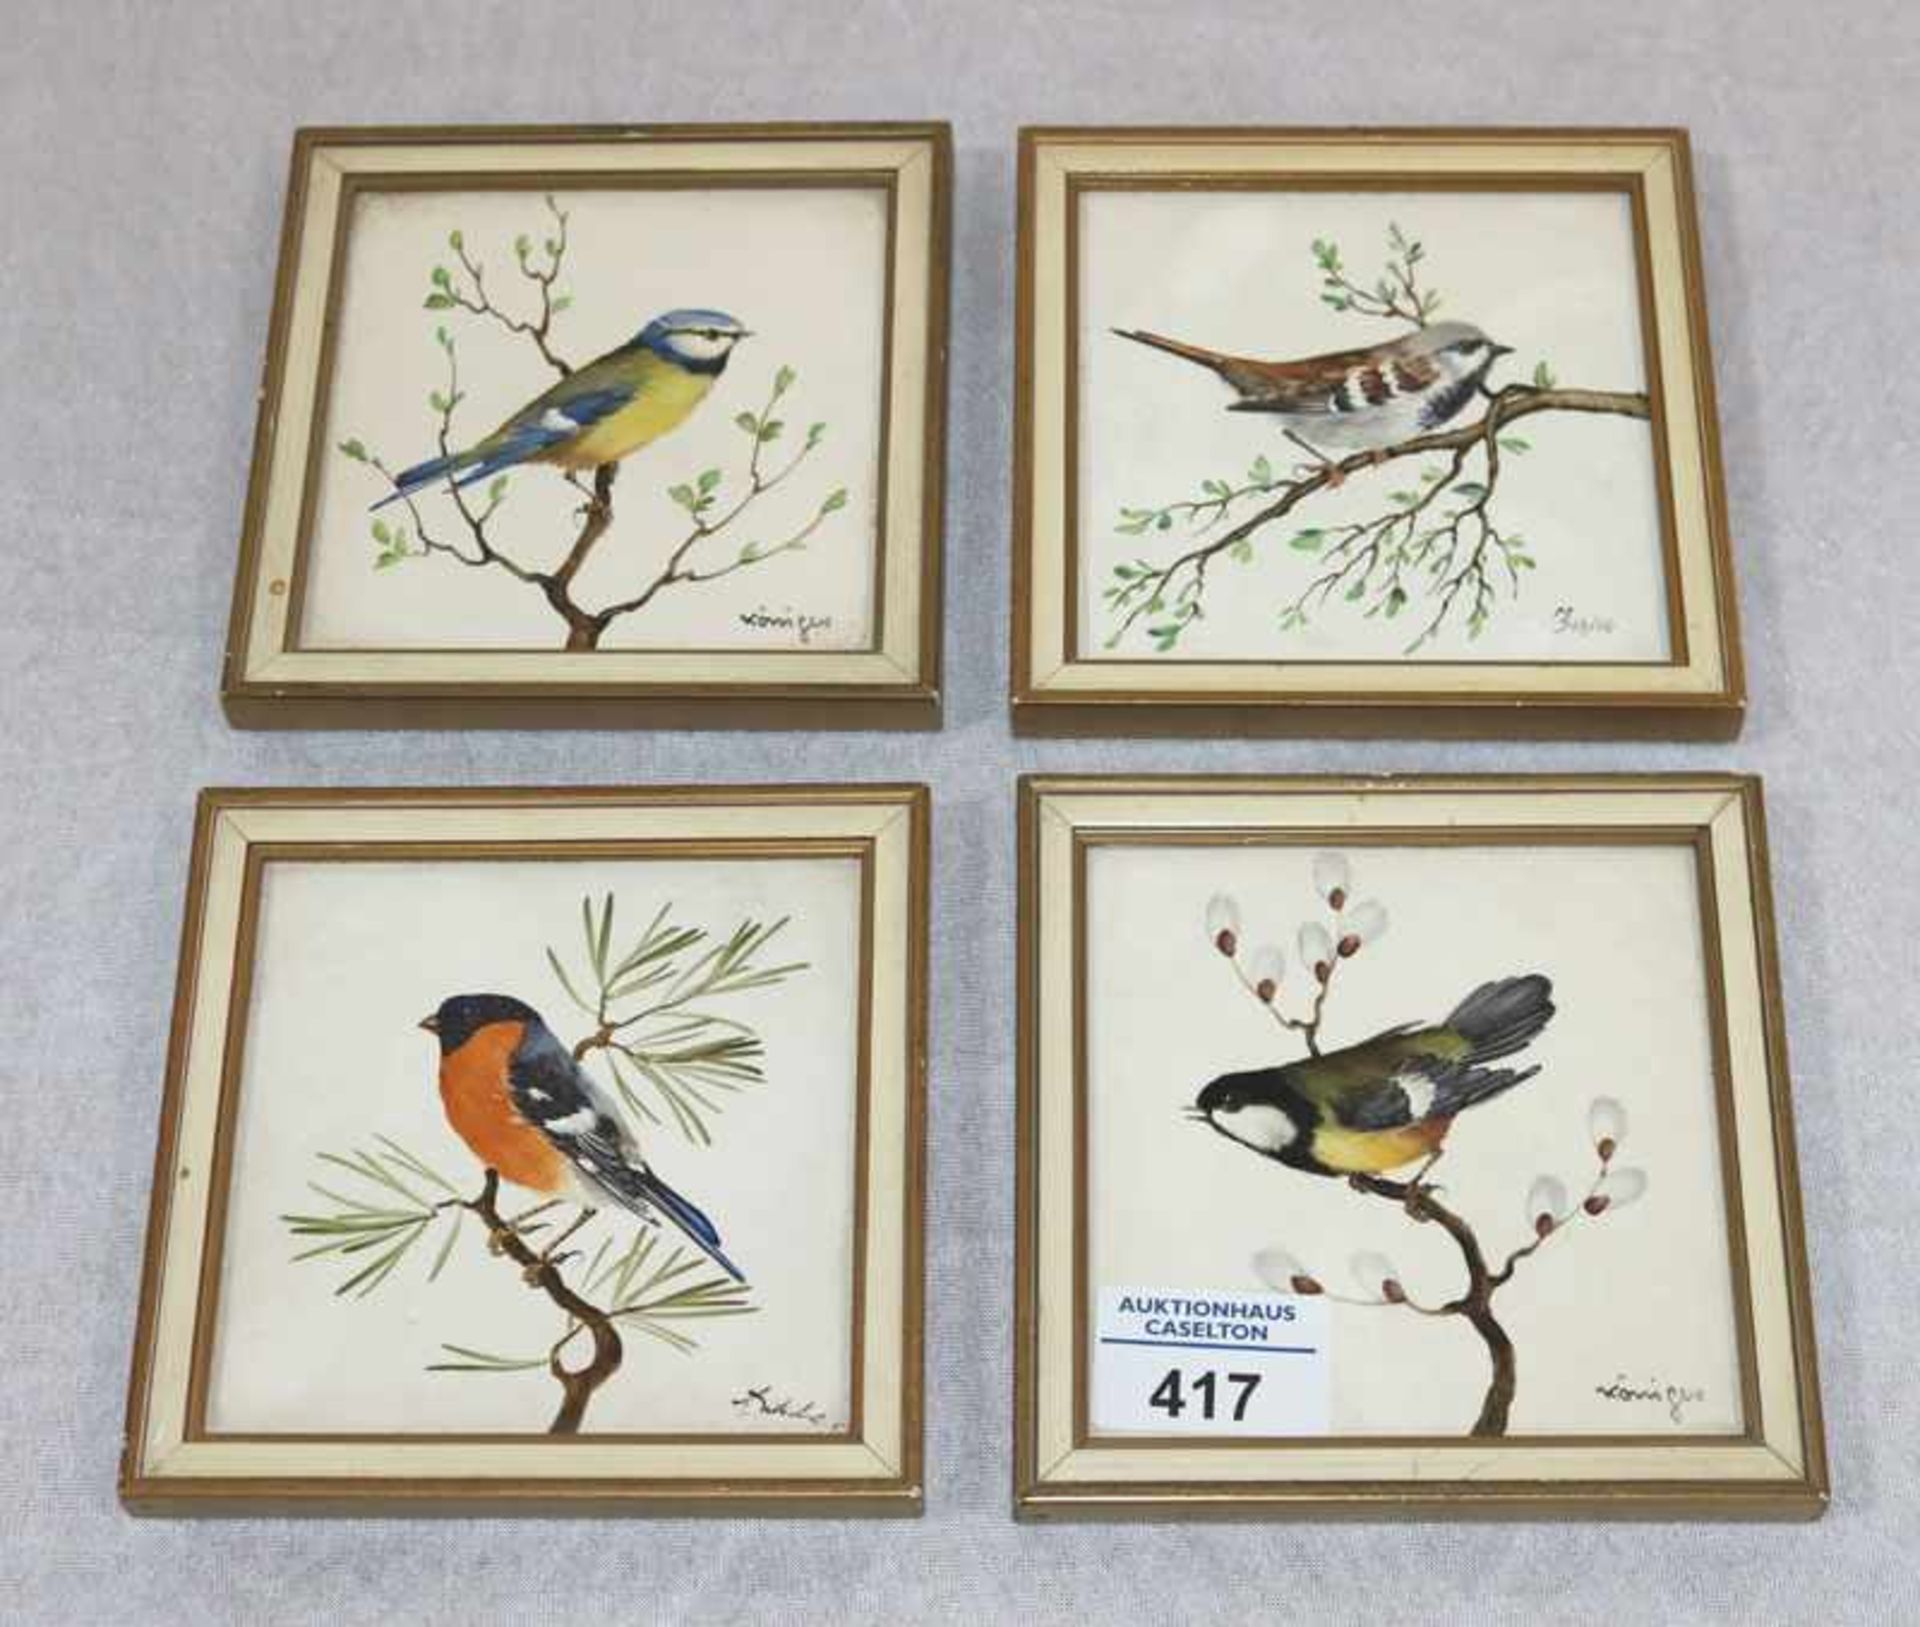 4 Rosenthal Porzellanfliesen mit Vogeldekor, gerahmt, Rahmen teils bestossen, 12,5 cm x 12,5 cm